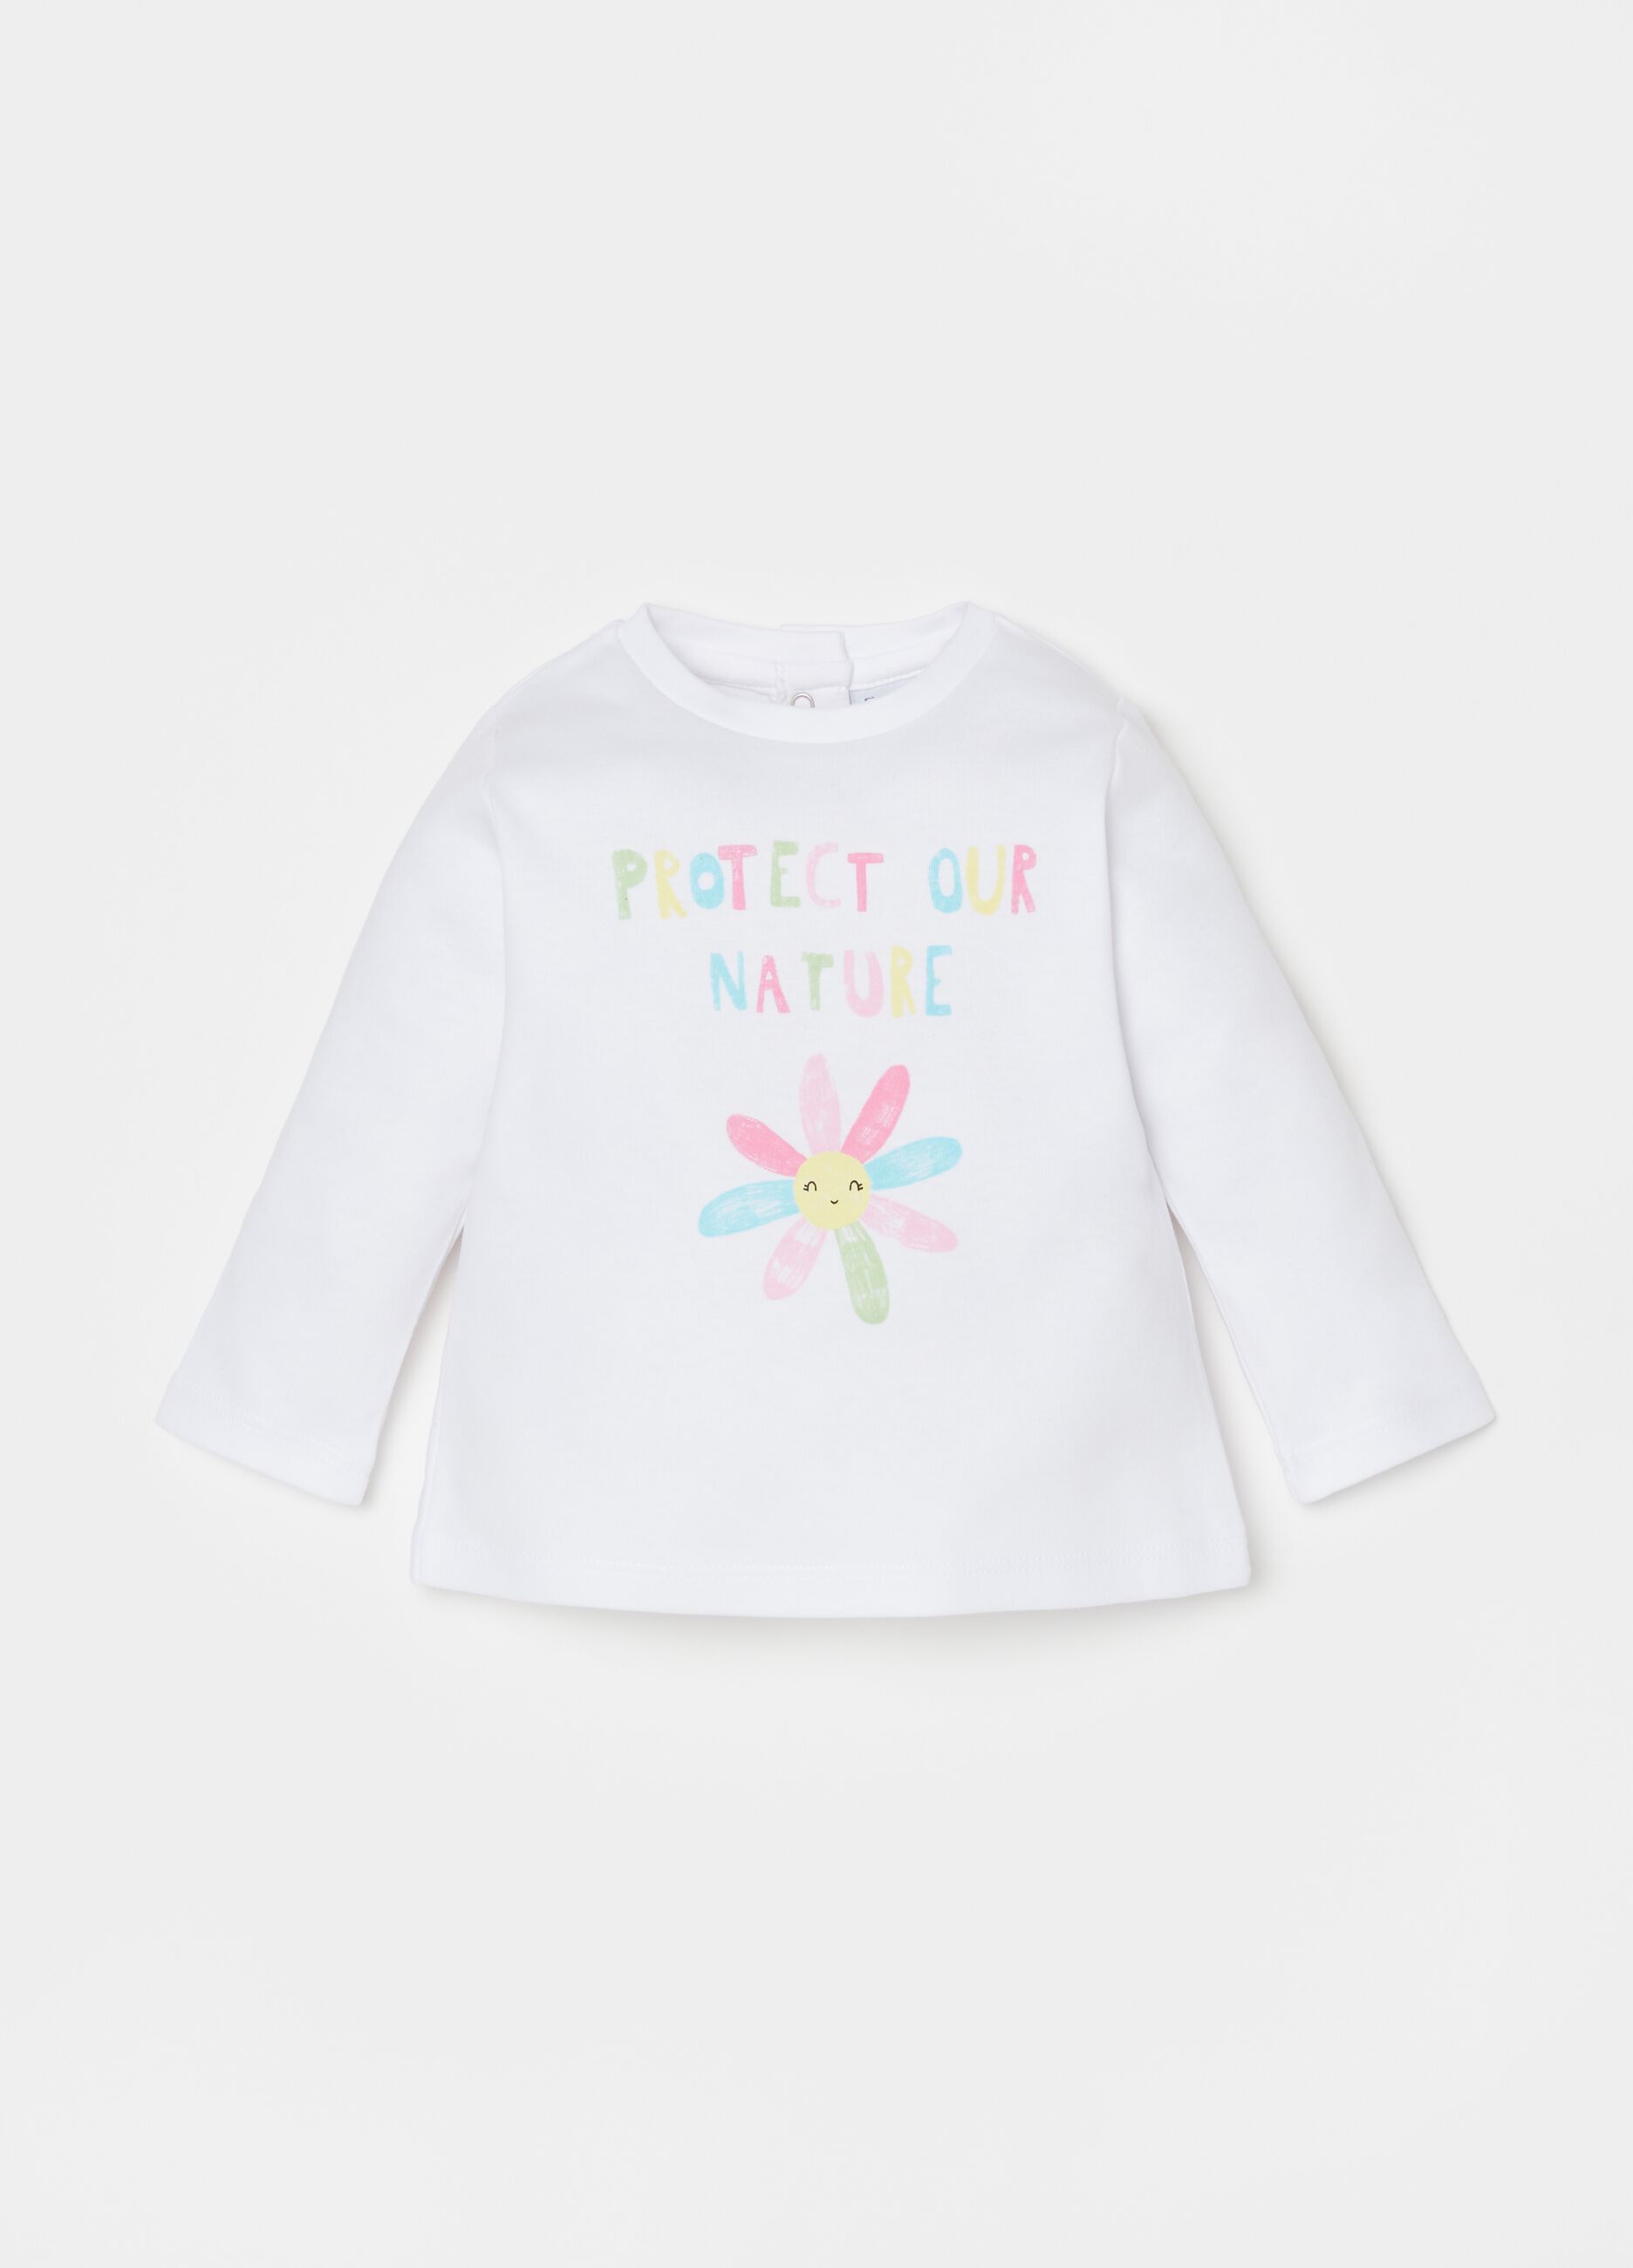 Camiseta algodón 100% estampado flor